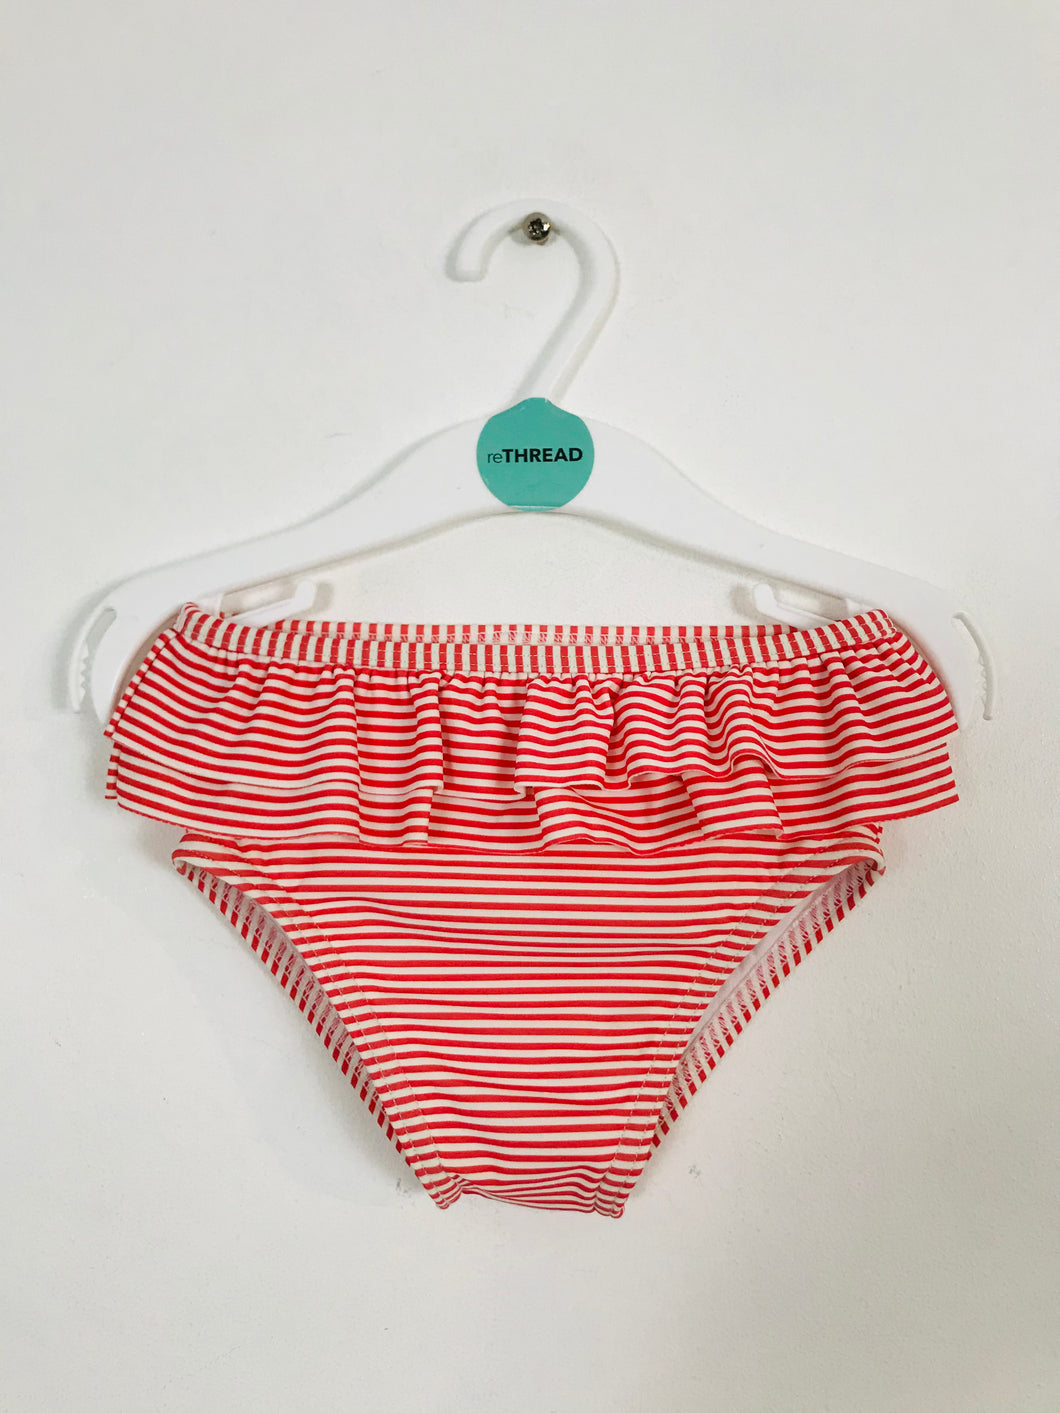 Boden Kid’s Stripe Swimwear Bottoms | 12-18 Months | Red